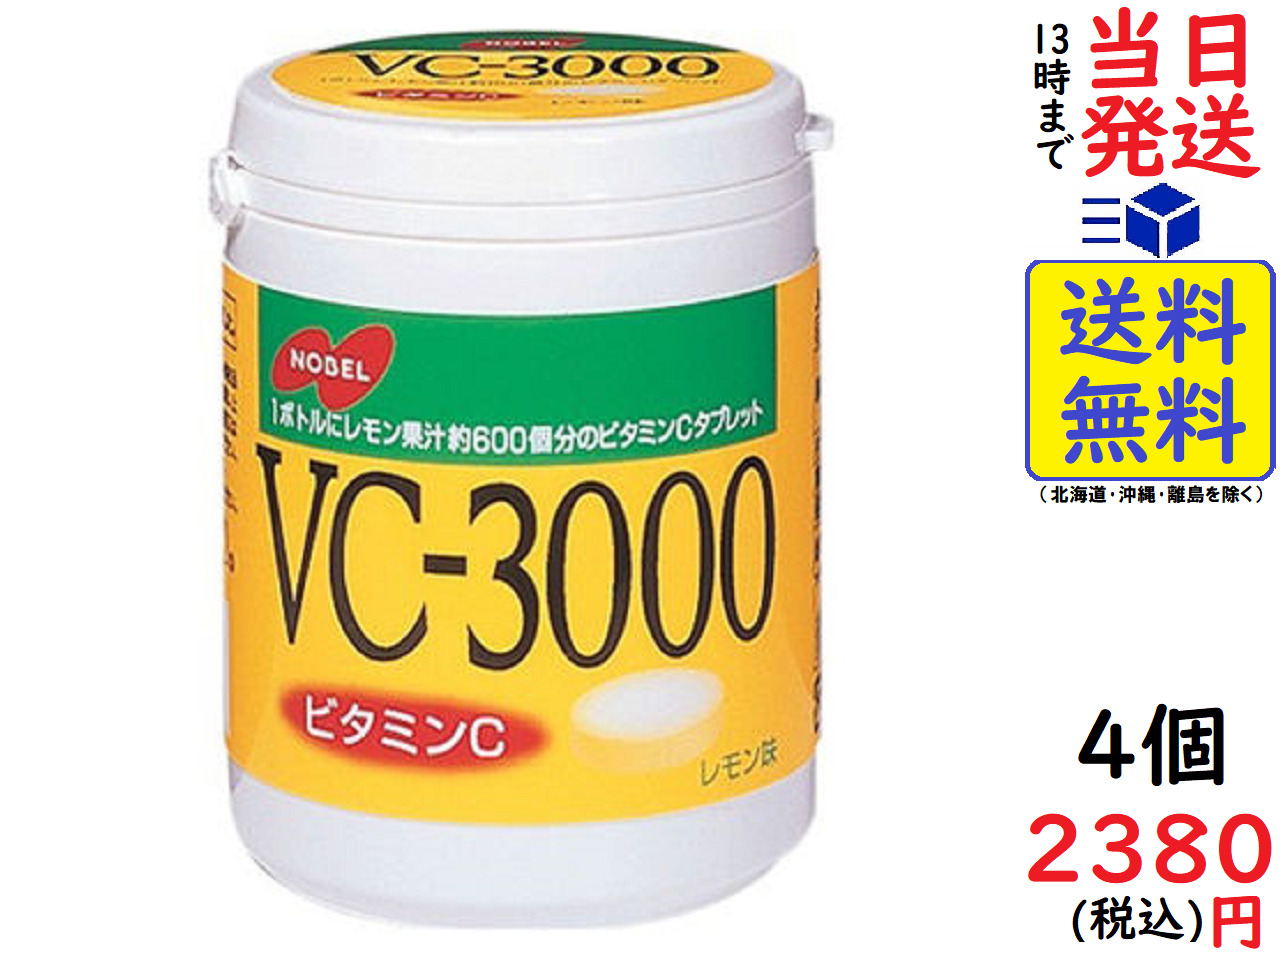 ノーベル製菓 VC-3000ボトル 150g ×4個入<br>賞味期限2024 03